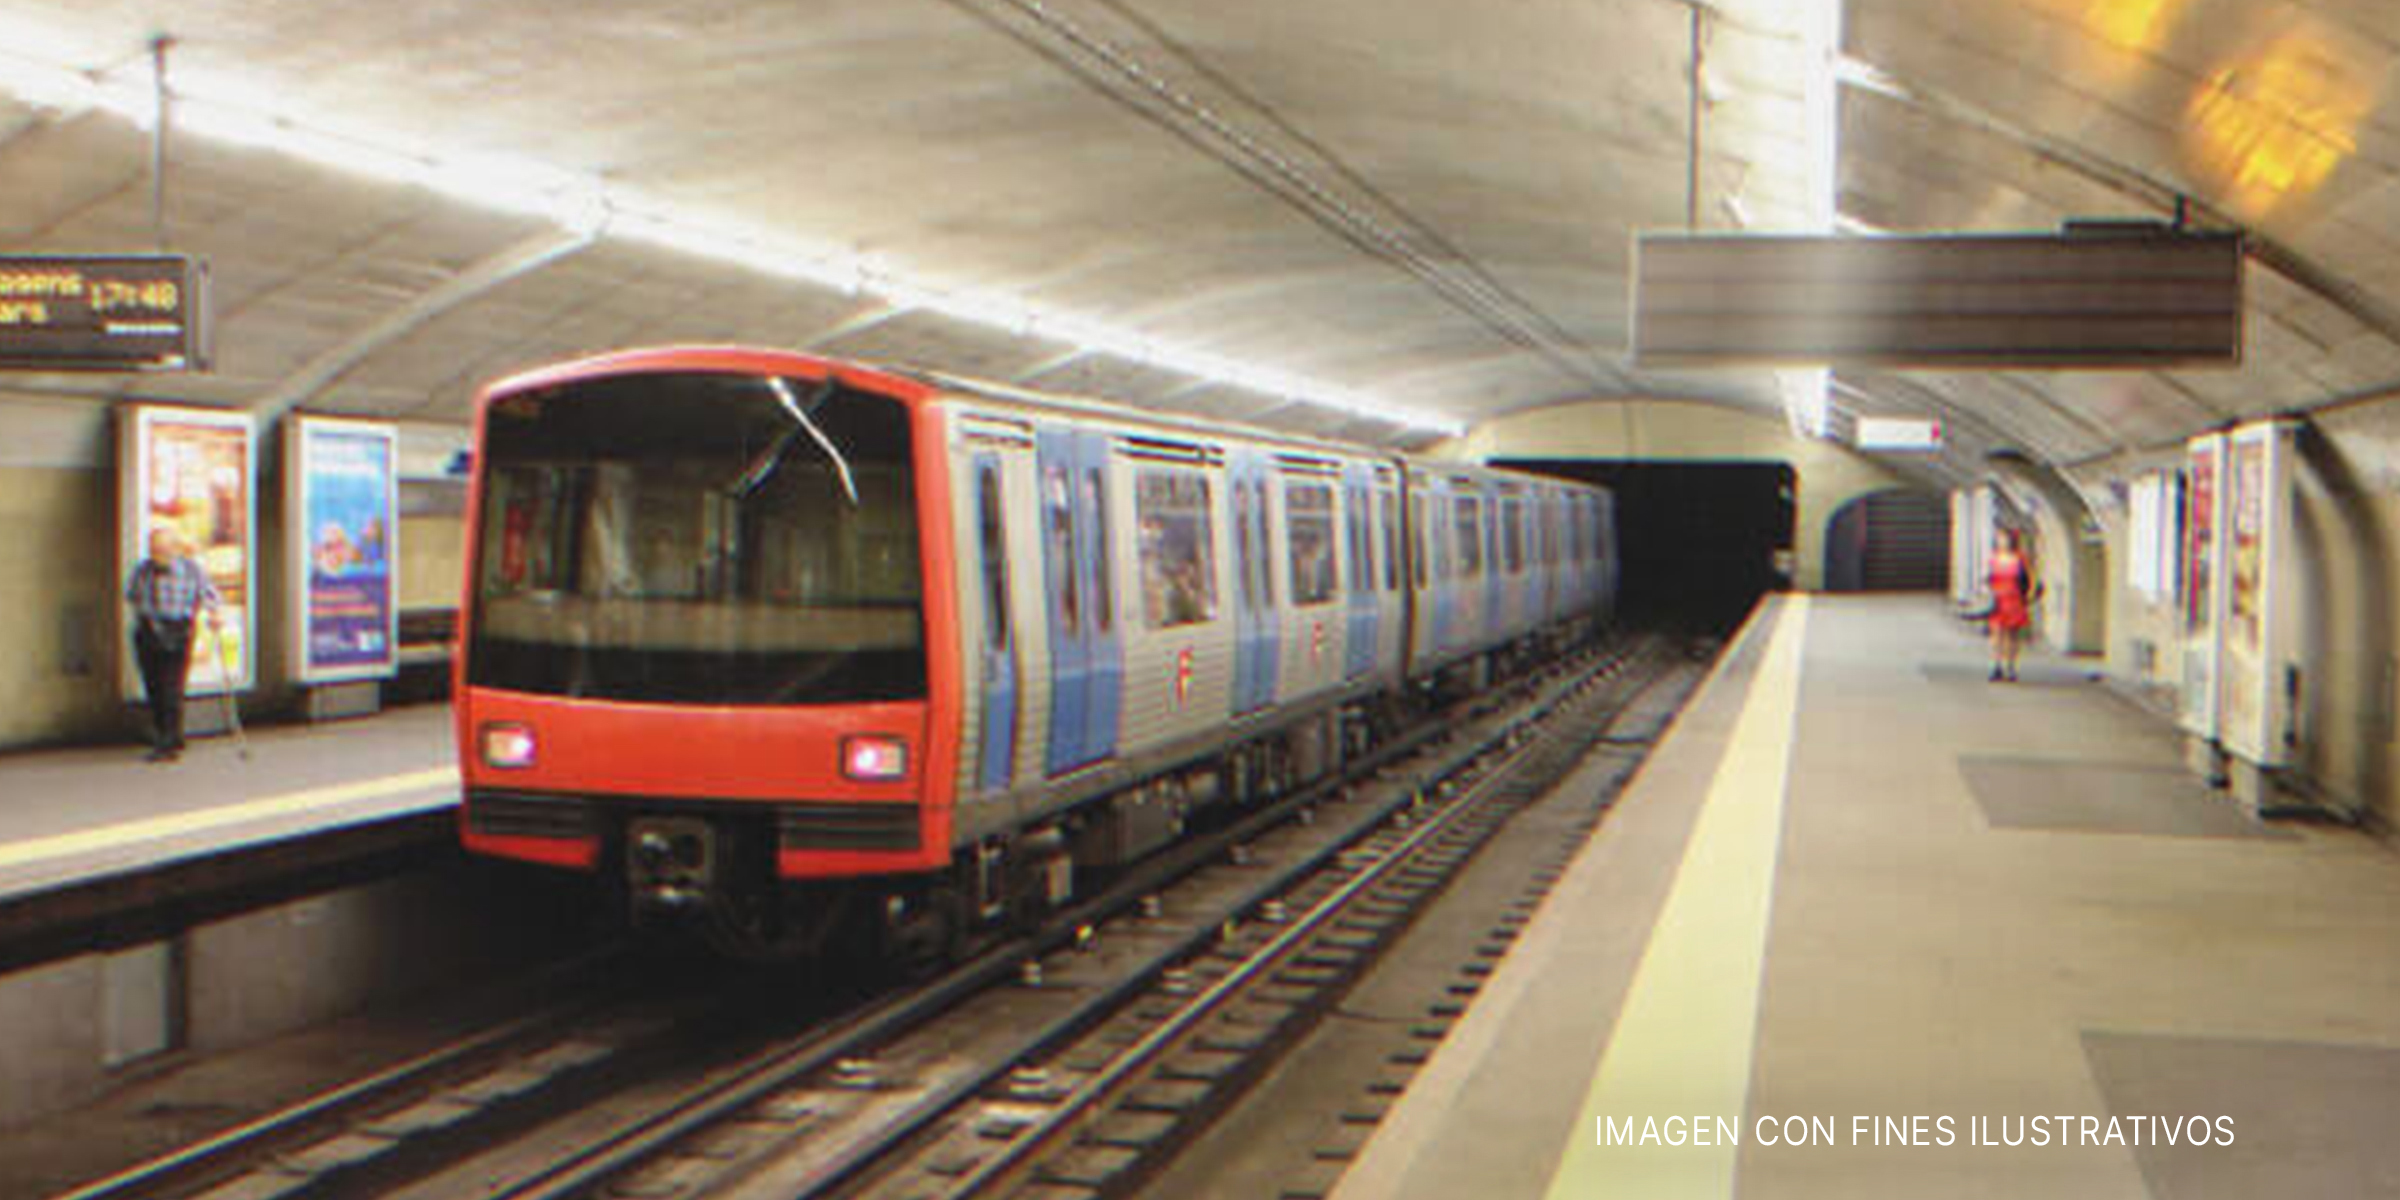 Tren de metro detenido en la estación. | Foto: Shutterstock